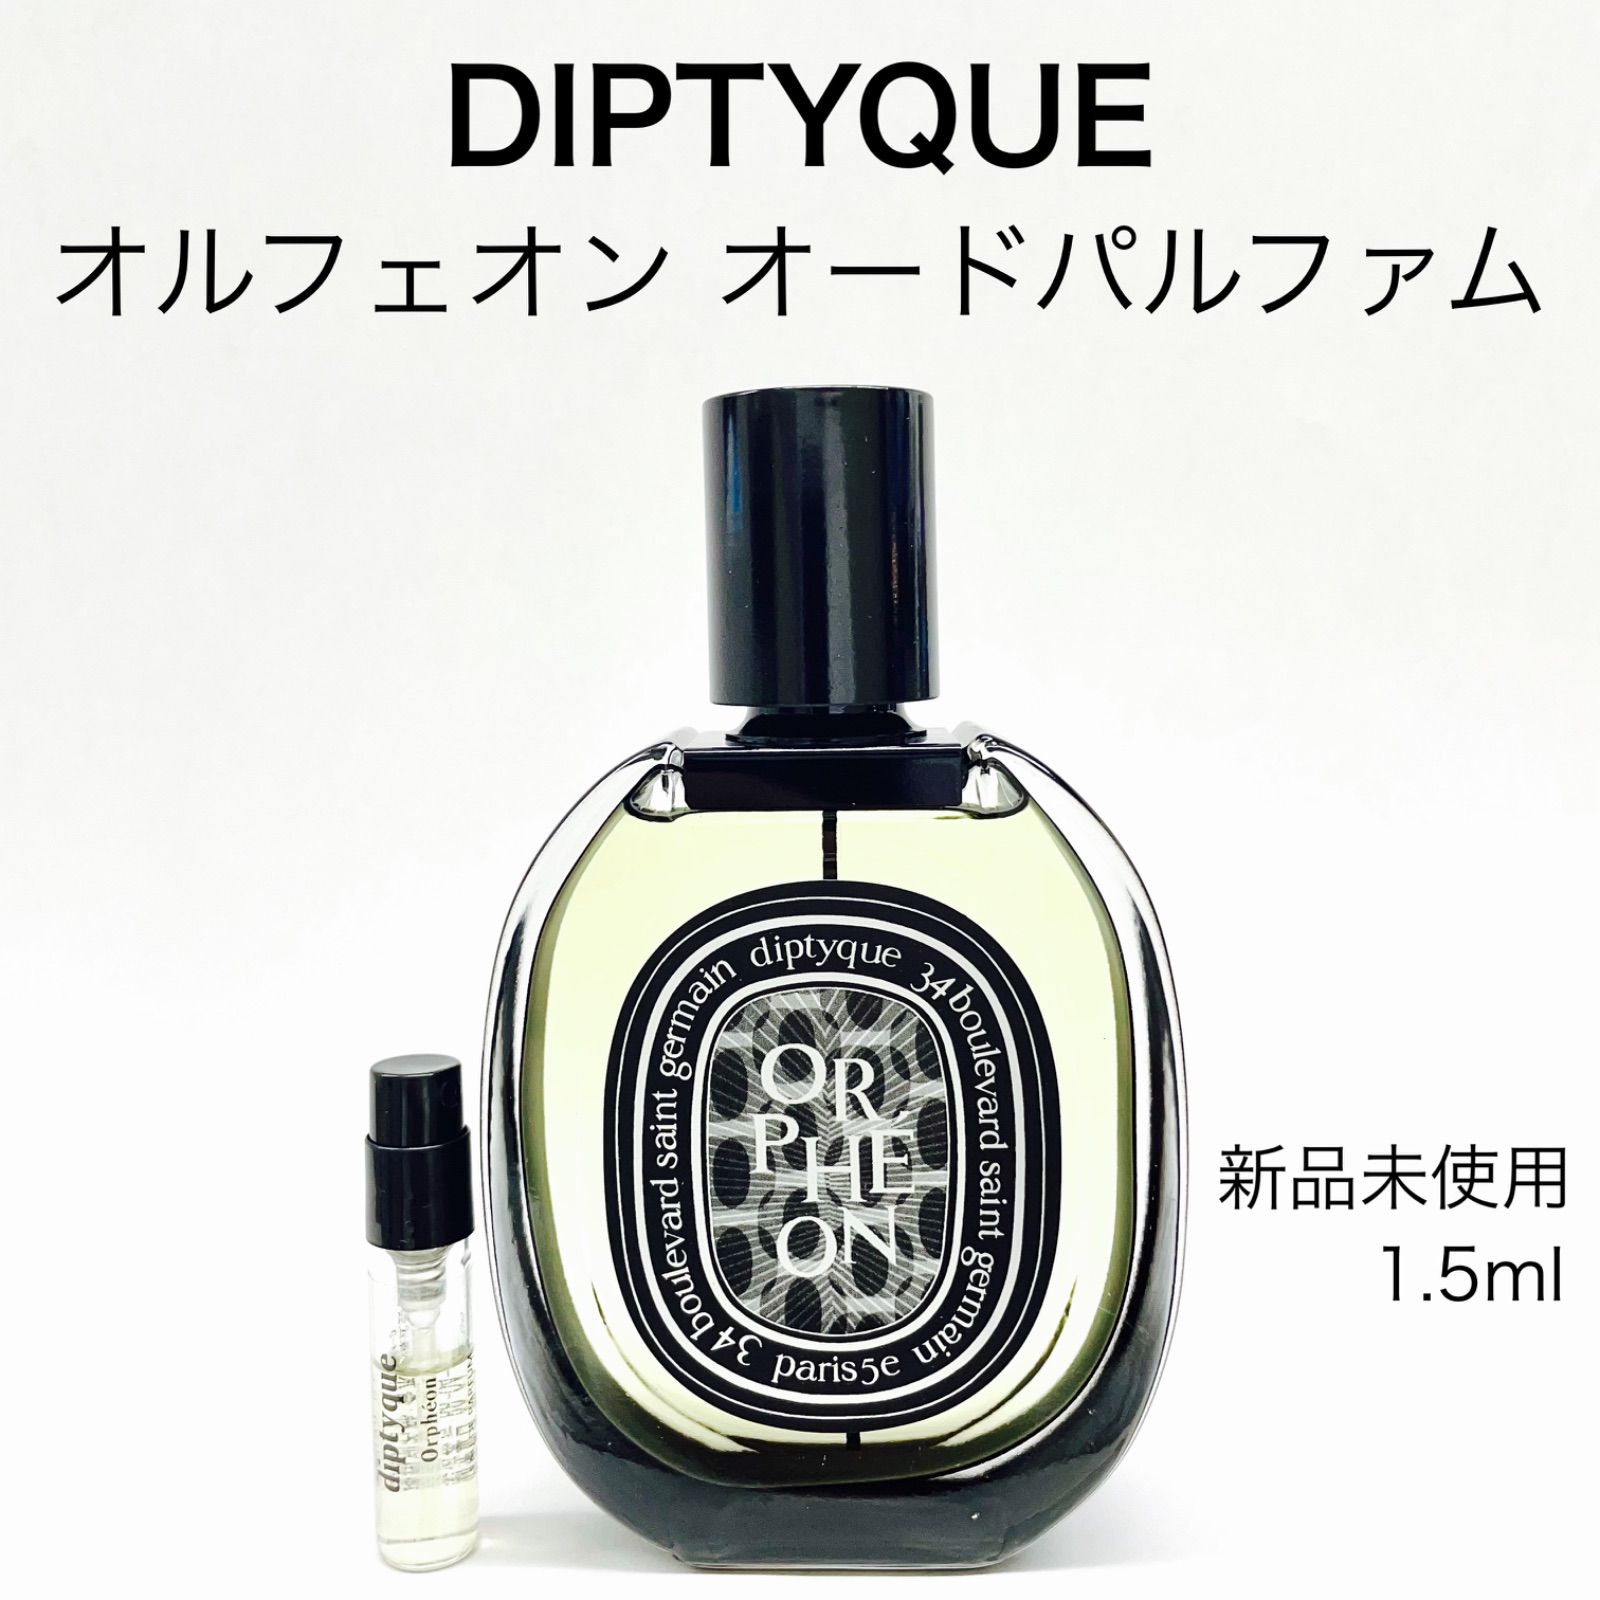 ディプティック オルフェオン - 香水